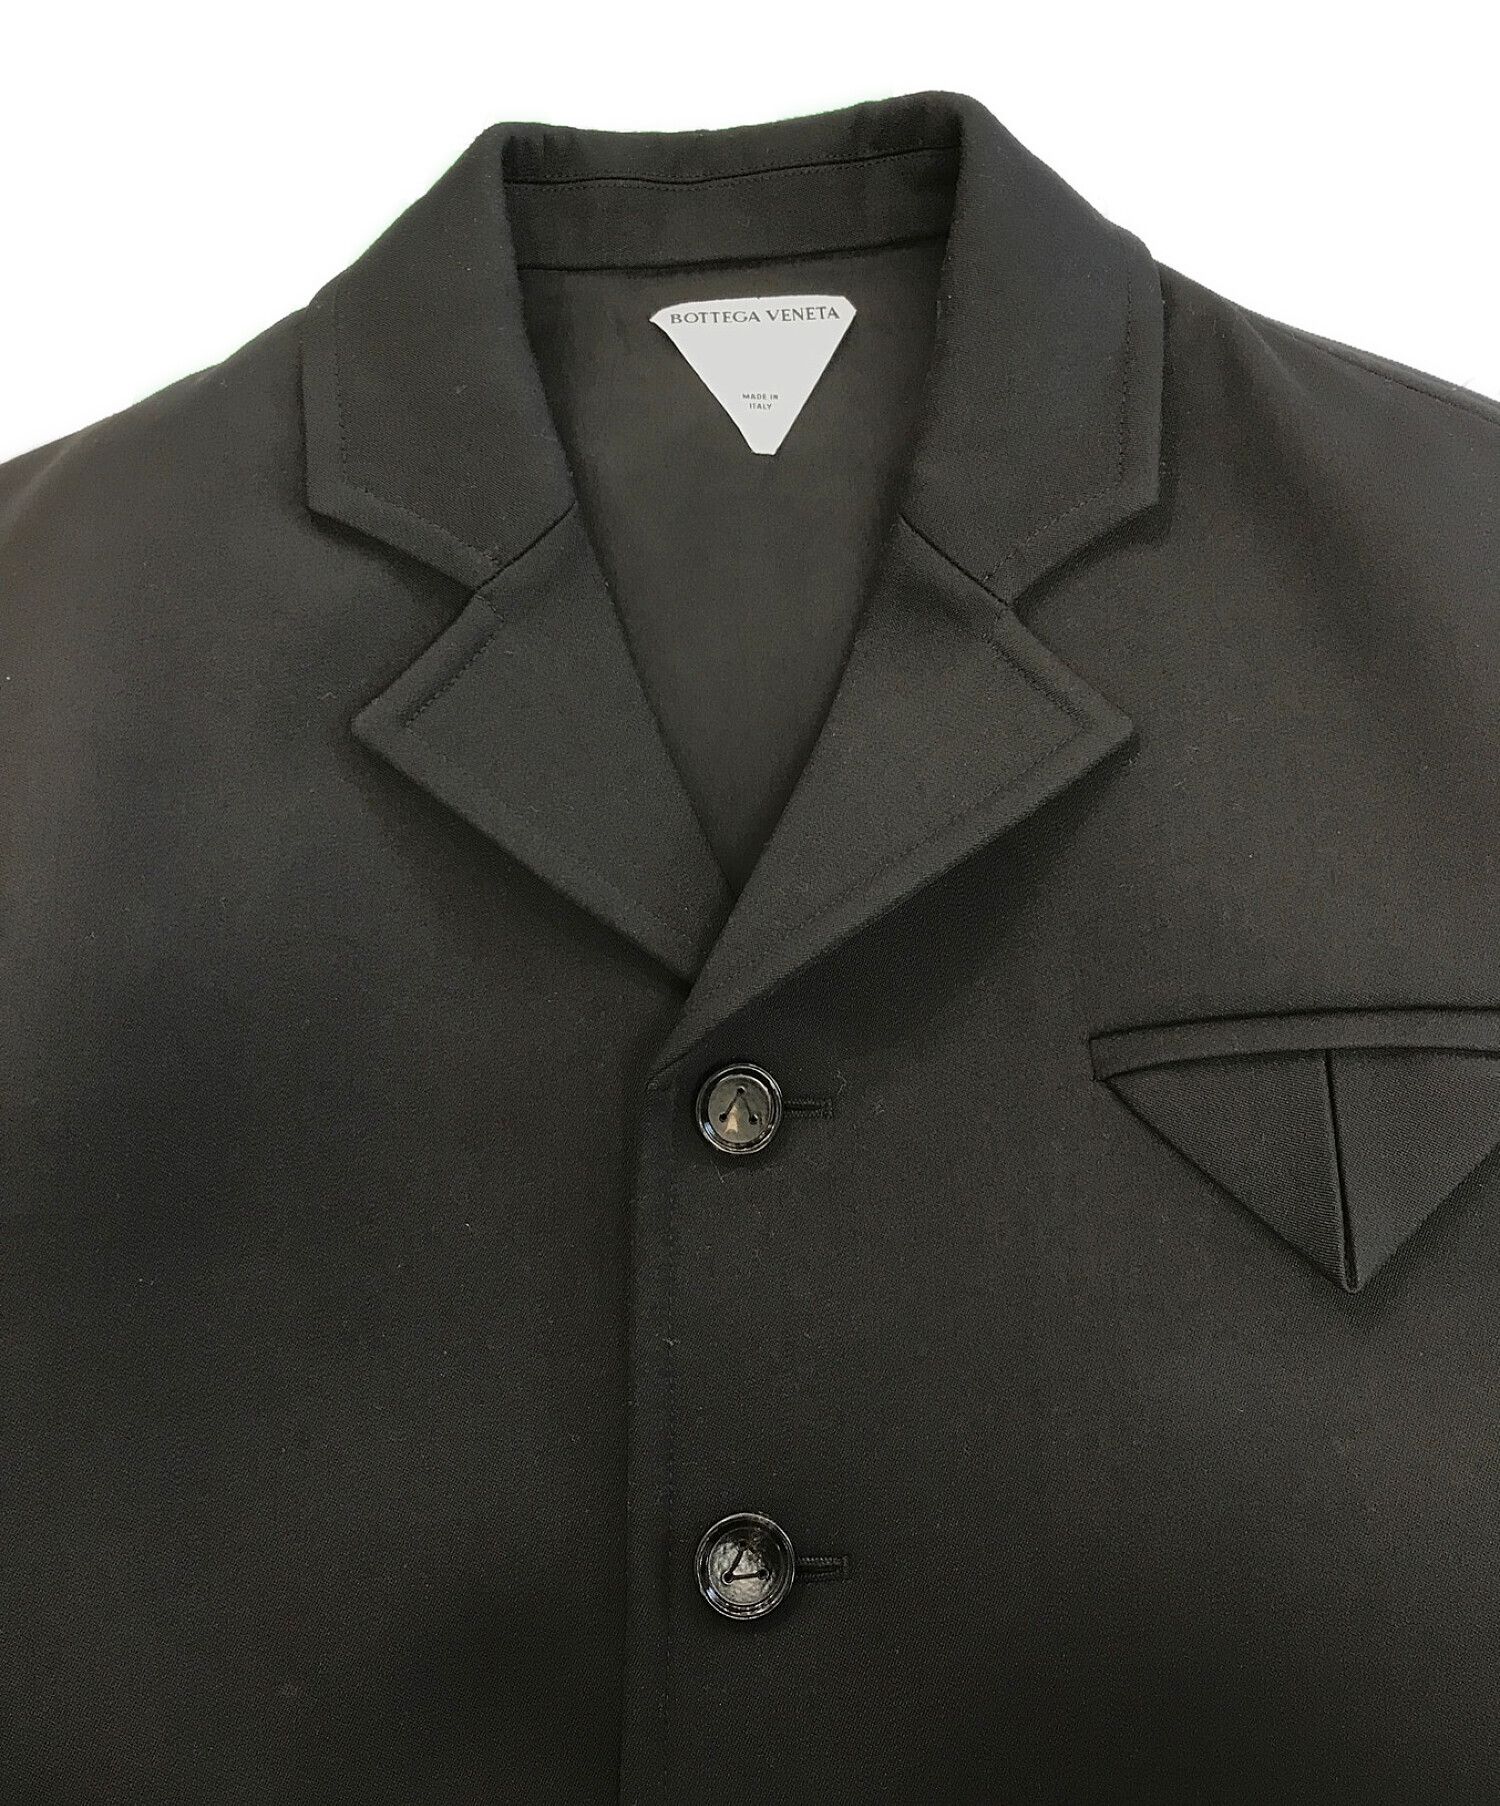 BOTTEGA VENETA (ボッテガベネタ) ウールジャケット ブラック サイズ:46